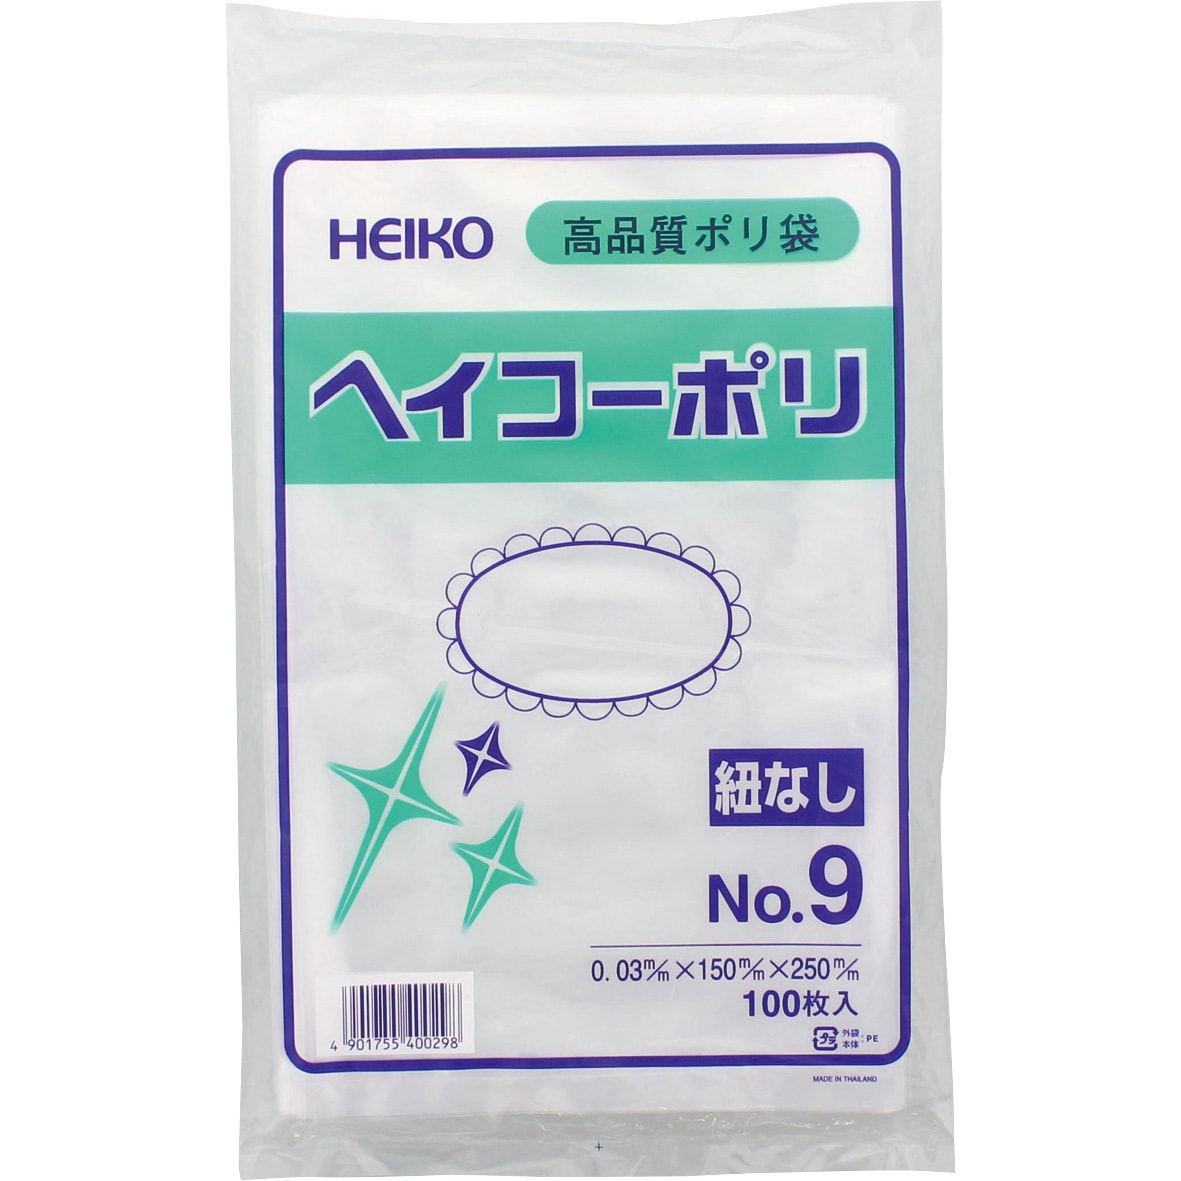 売り込み HEIKO ヘイコーポリ 0.03mm No.19 100枚入